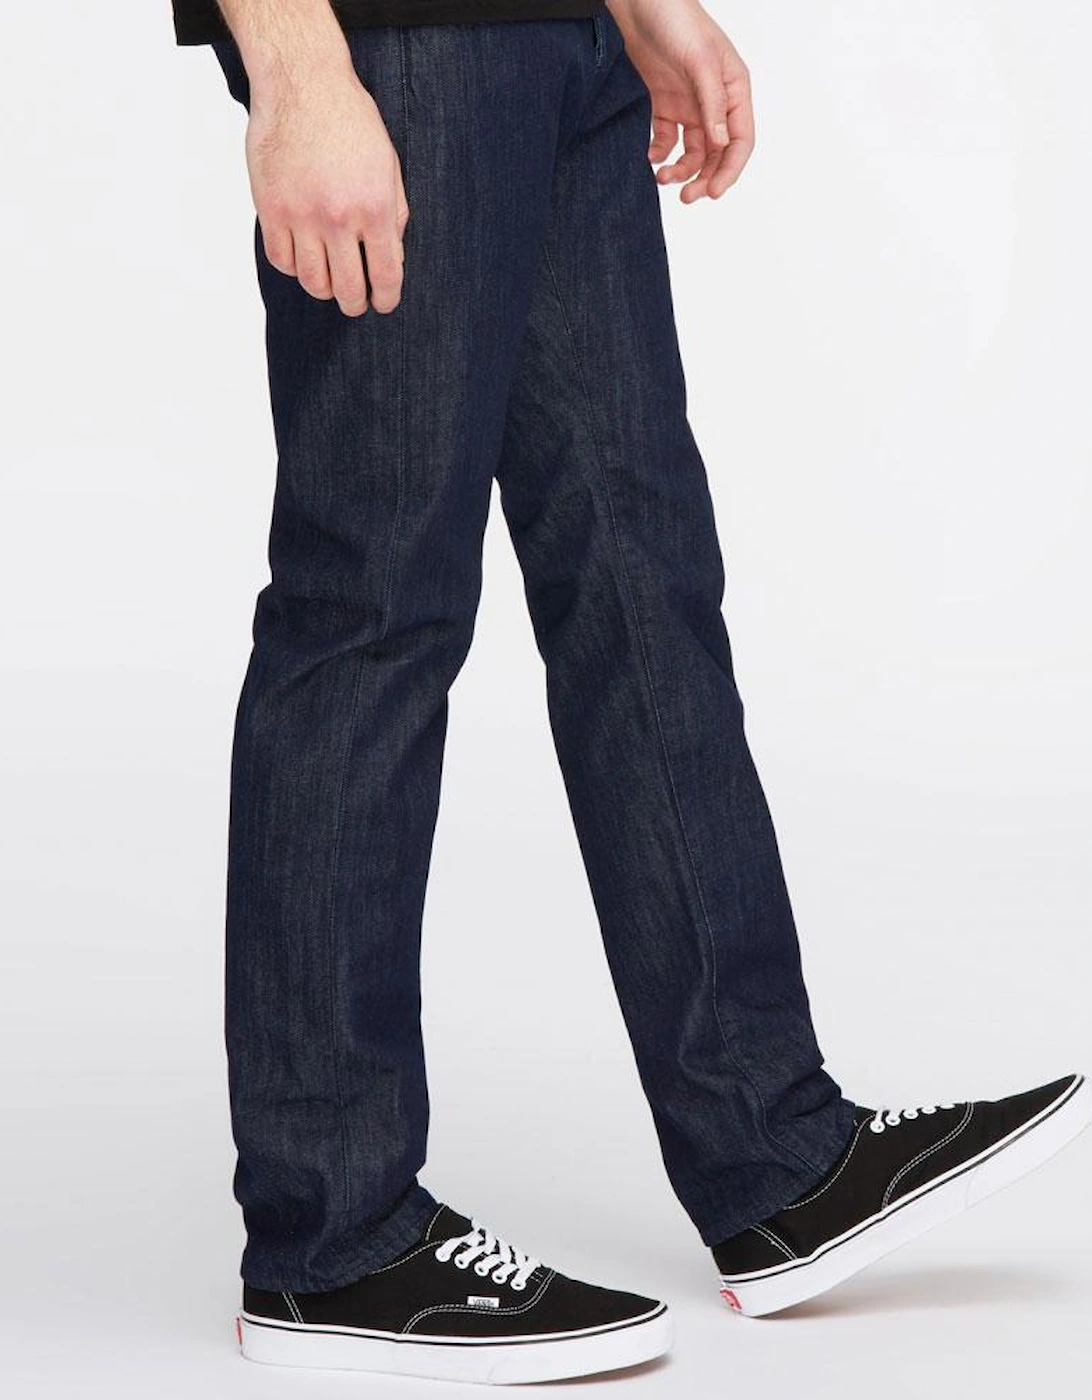 ED-55 Regular Tapered Jeans - Kingston Blue Denim - Rinse